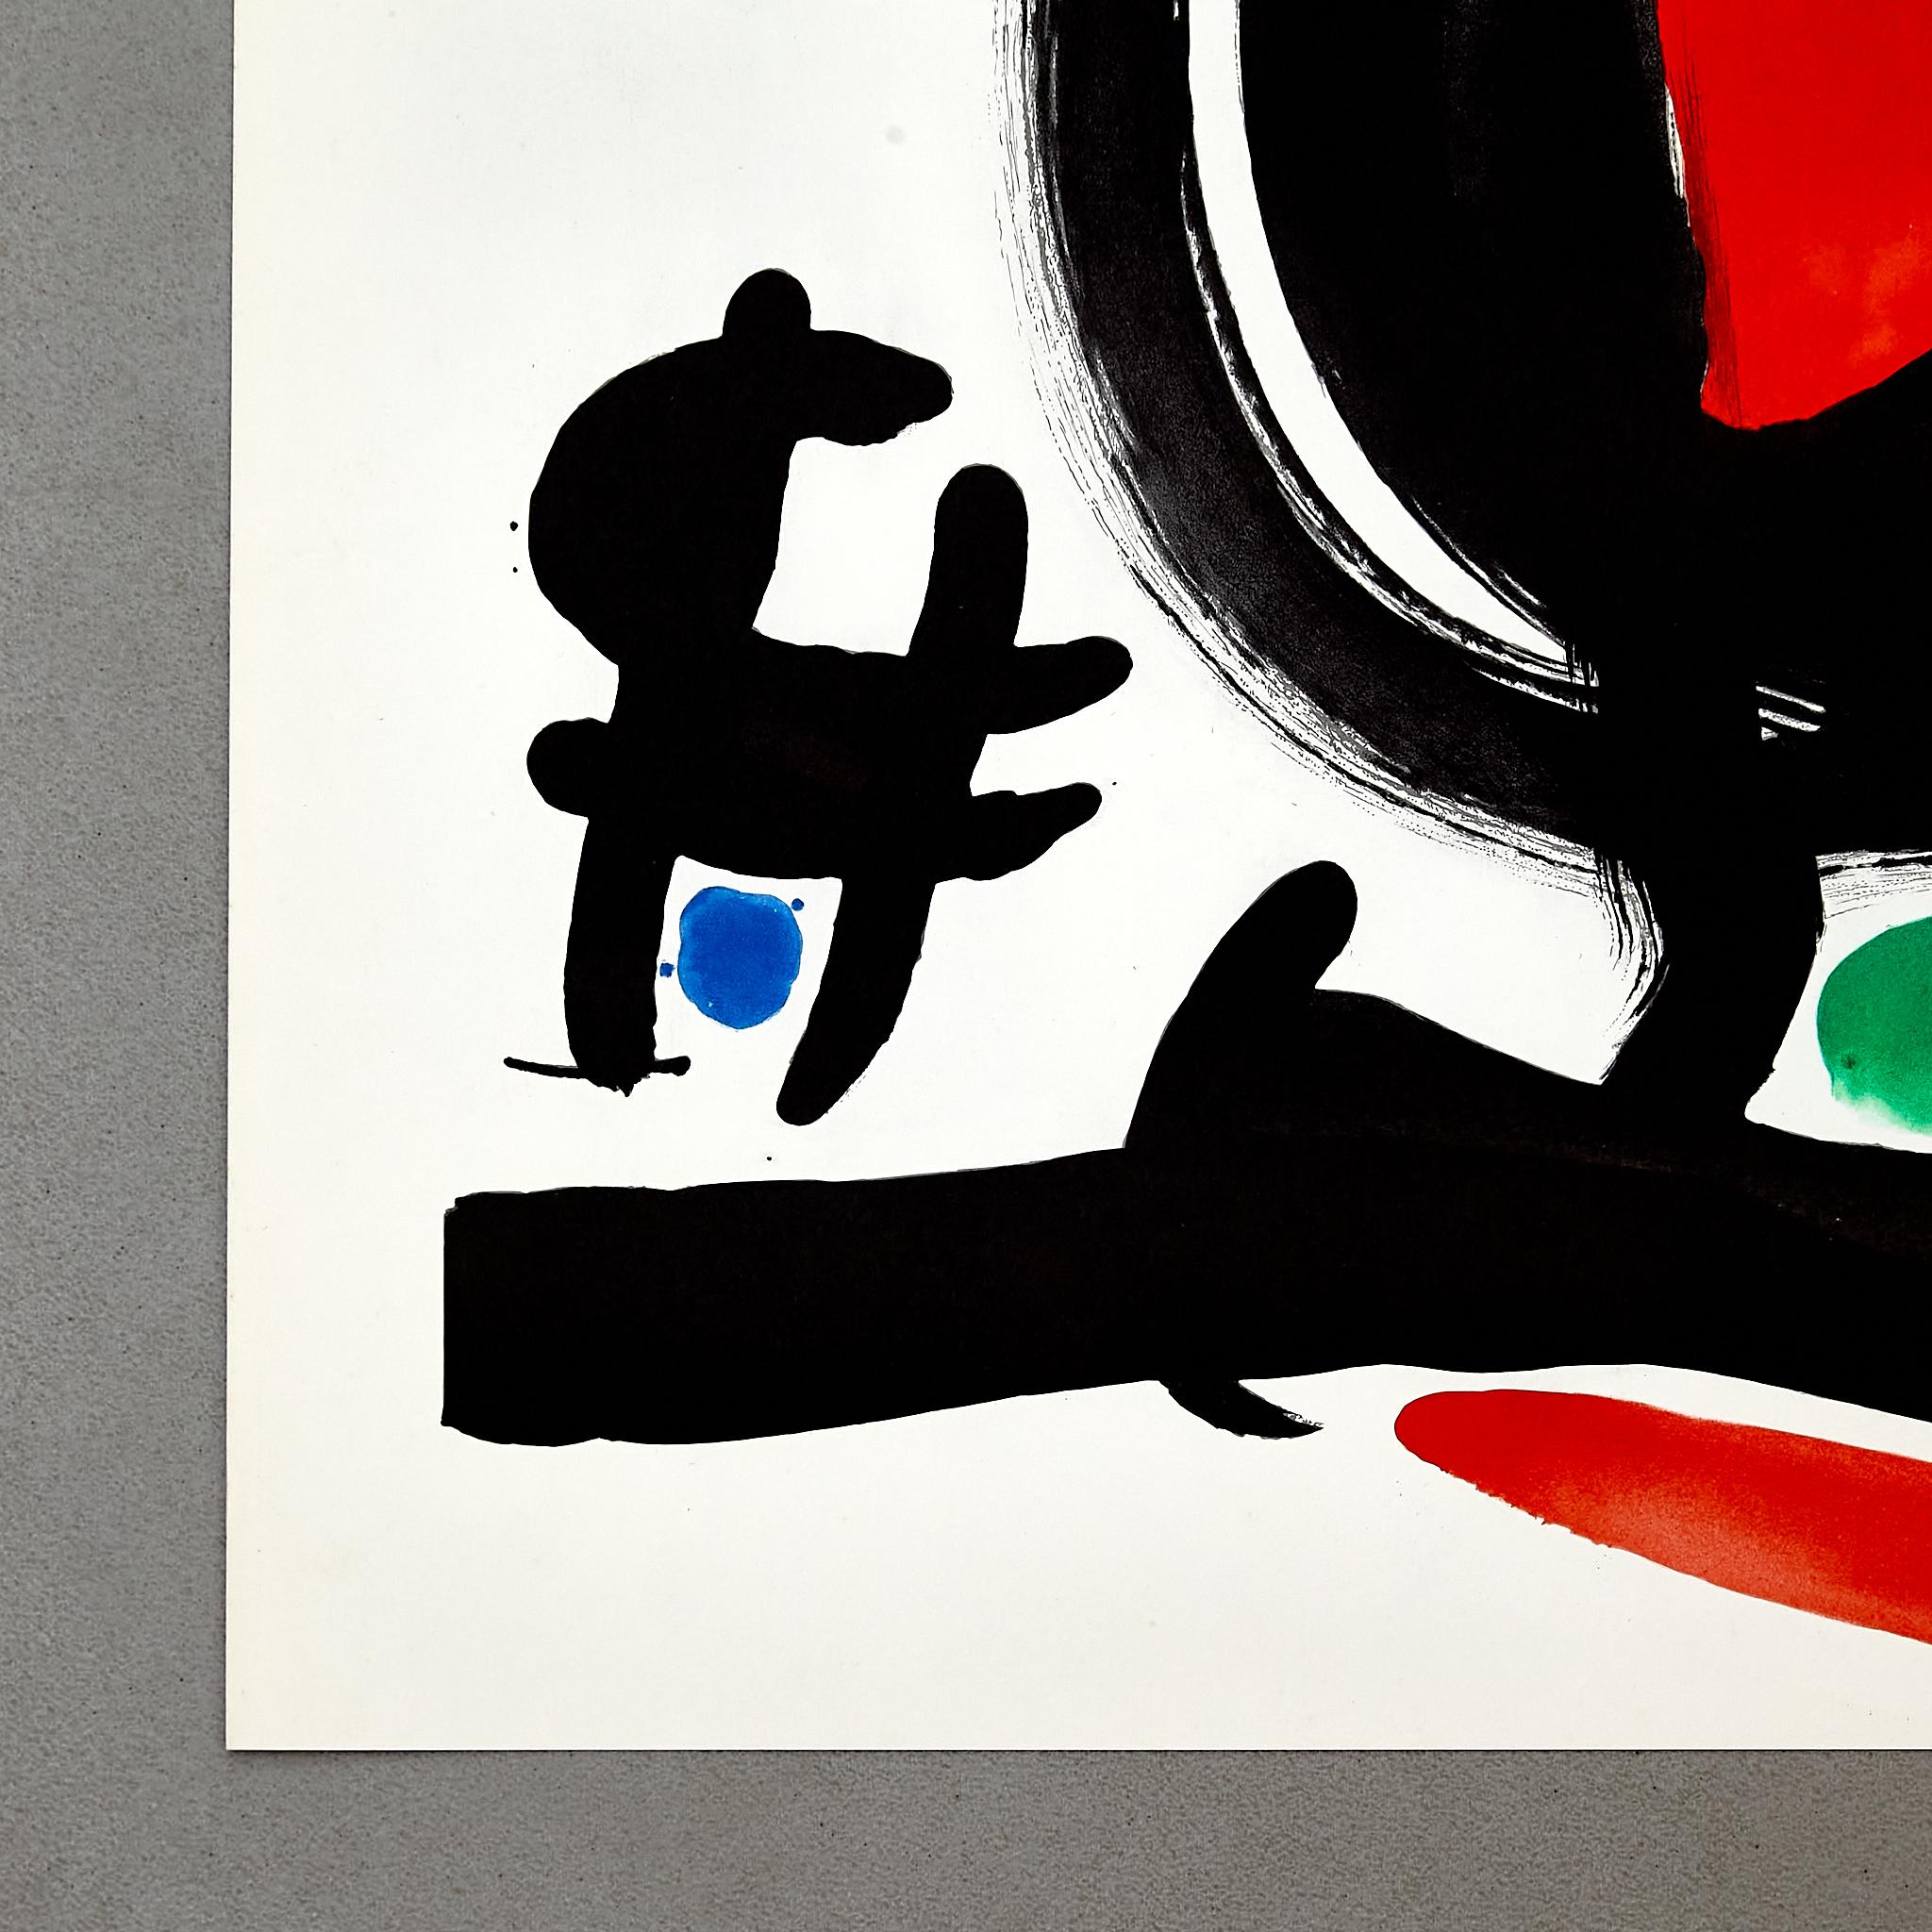  Hochwertige Farblithografie von Joan Miró, um 1960. (Mitte des 20. Jahrhunderts)